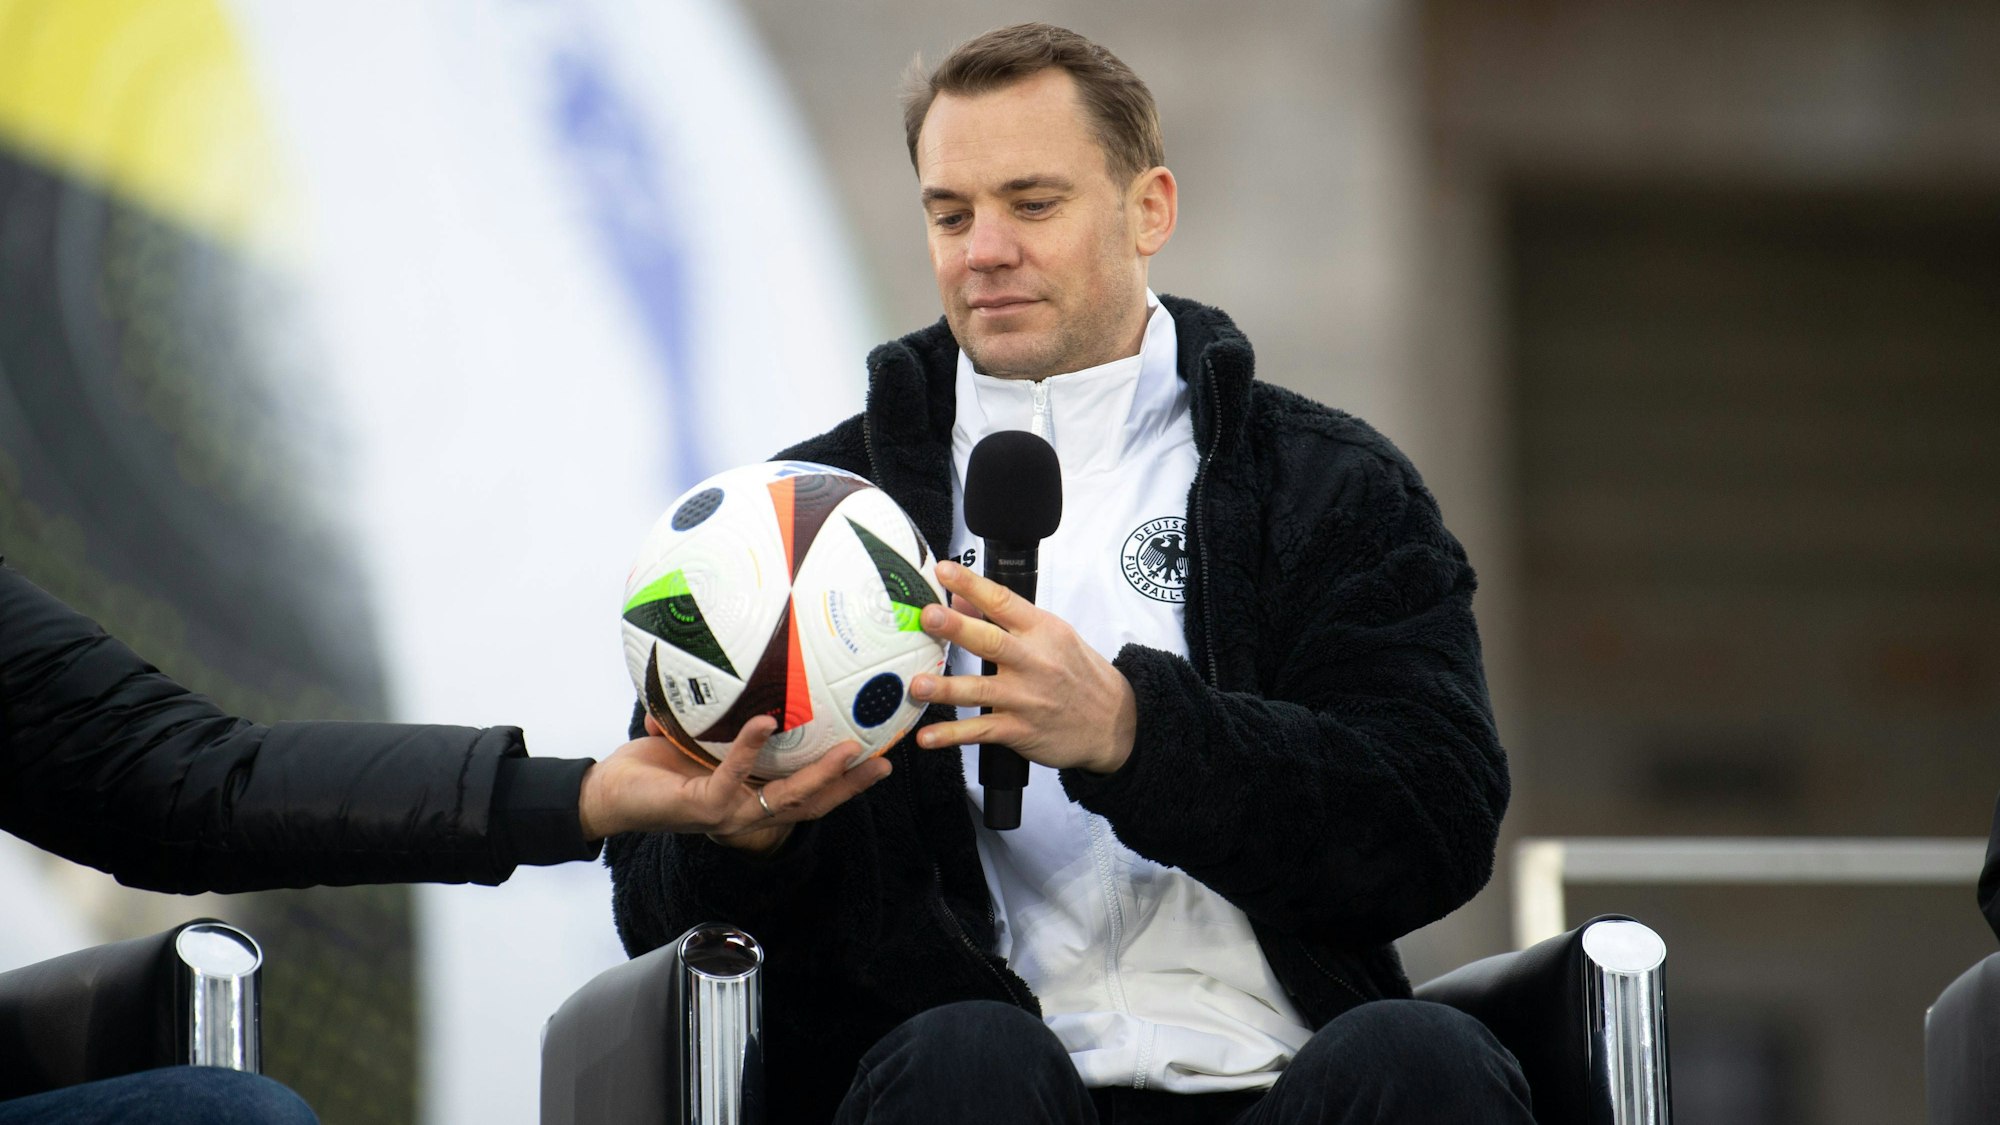 Der Spielball für die Europameistershaft in Deutschland heißt „Fußballliebe“ wurde am 15. November in Berlin präsentiert.